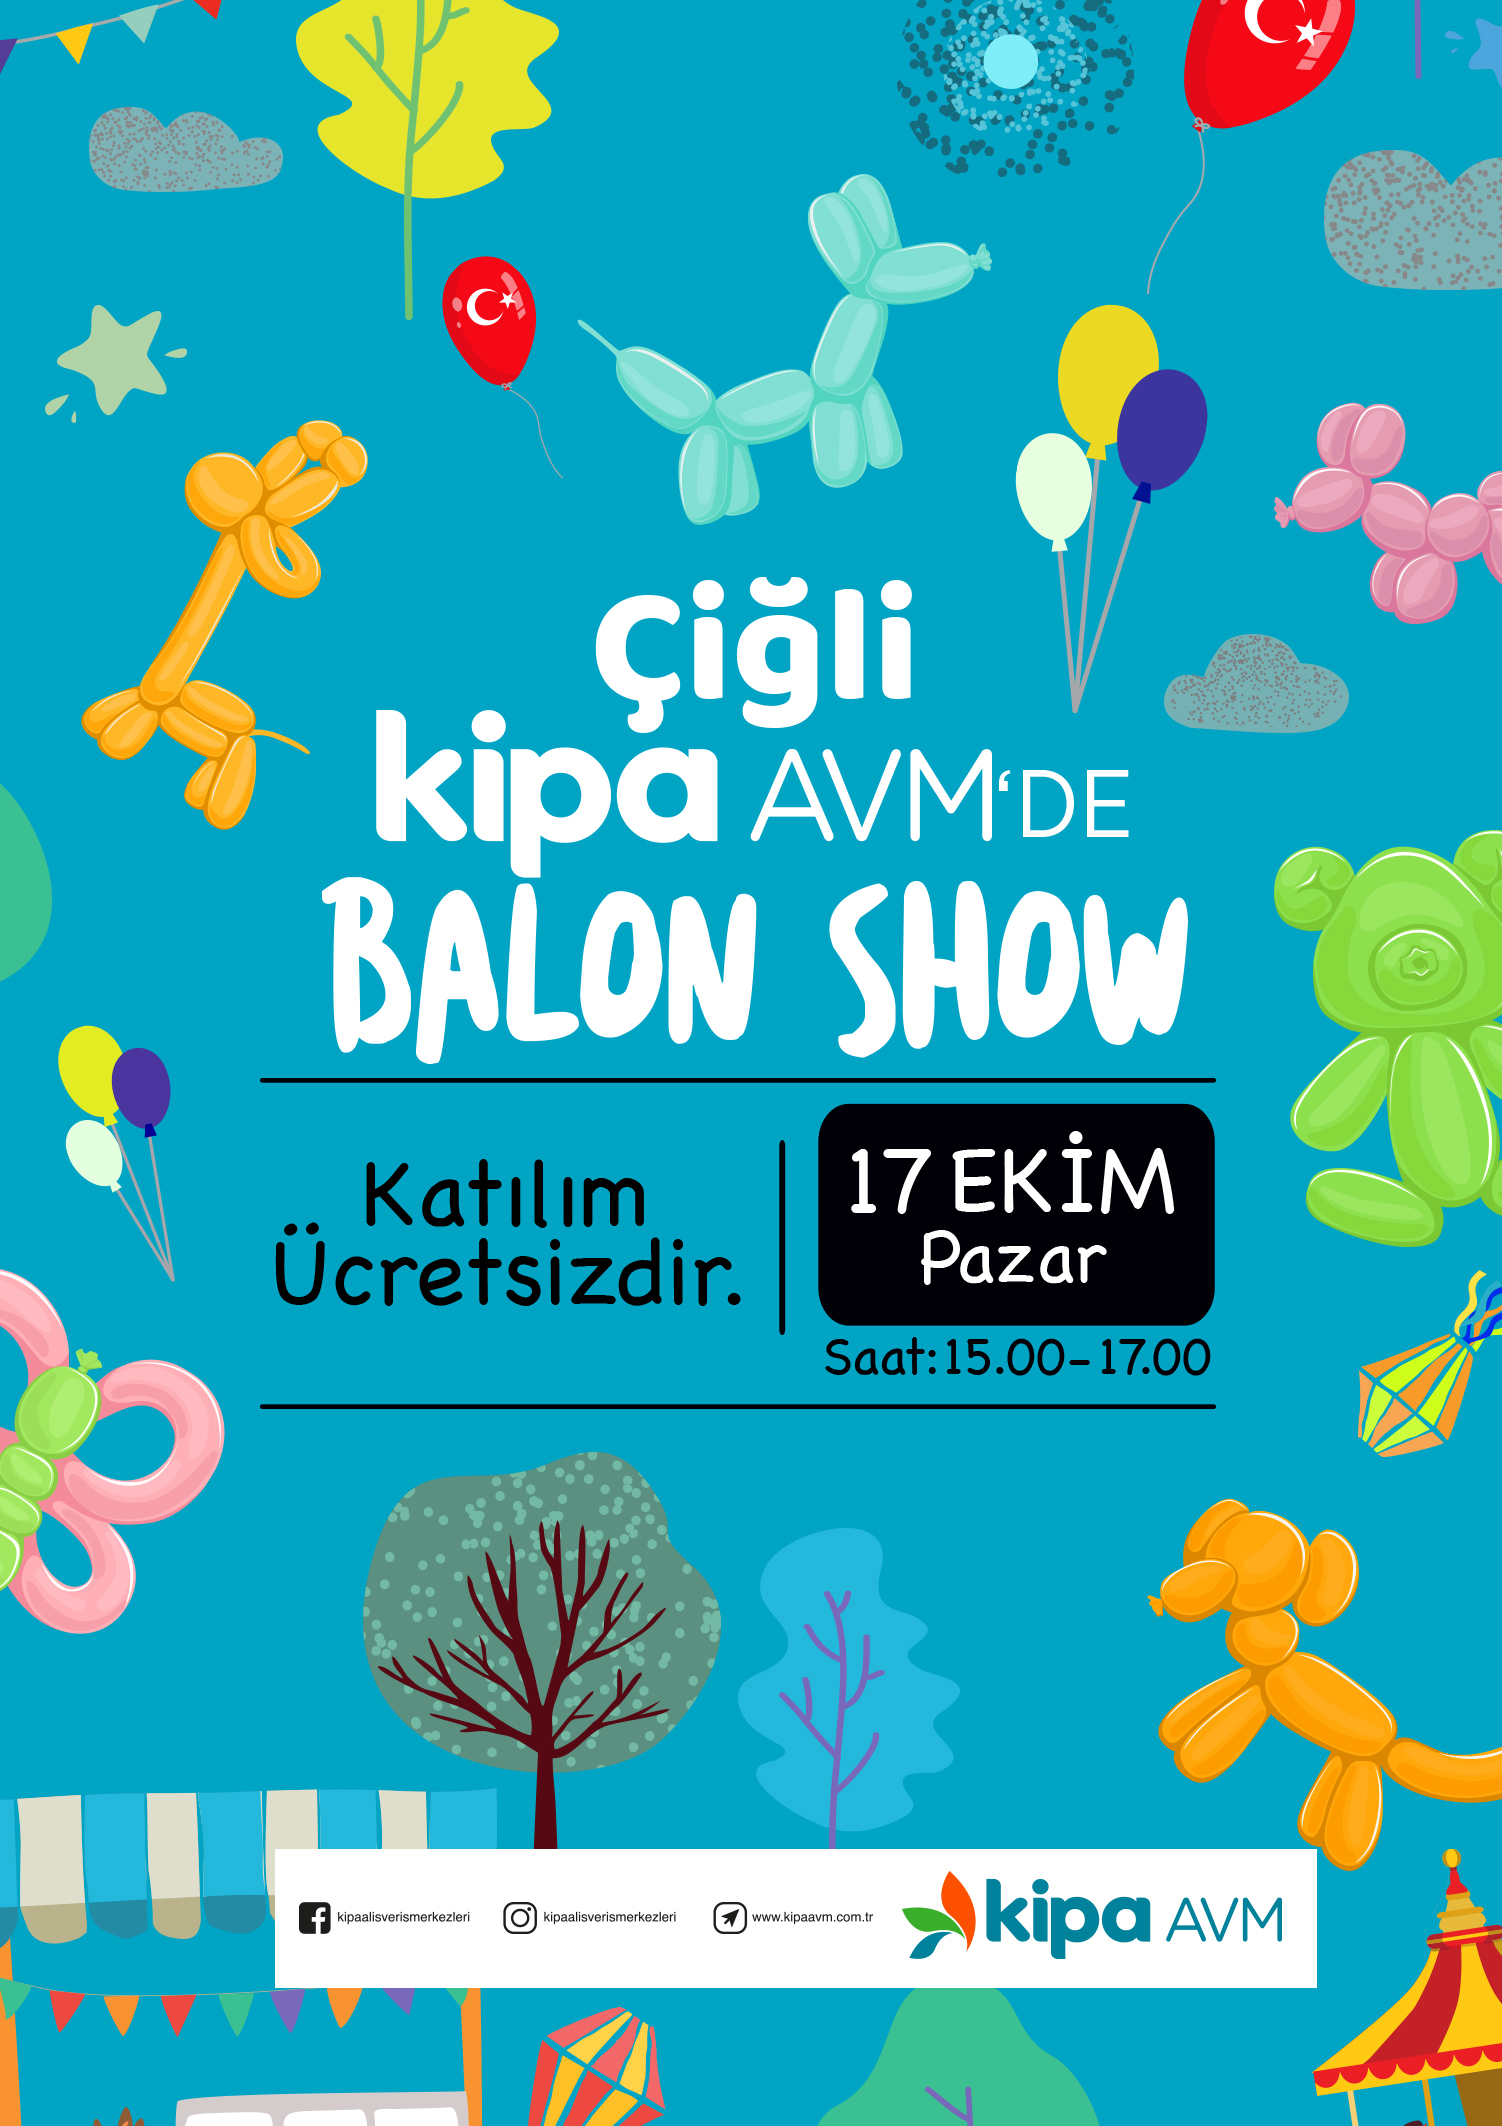 Çiğli Kipa AVM'de Balon Show!
